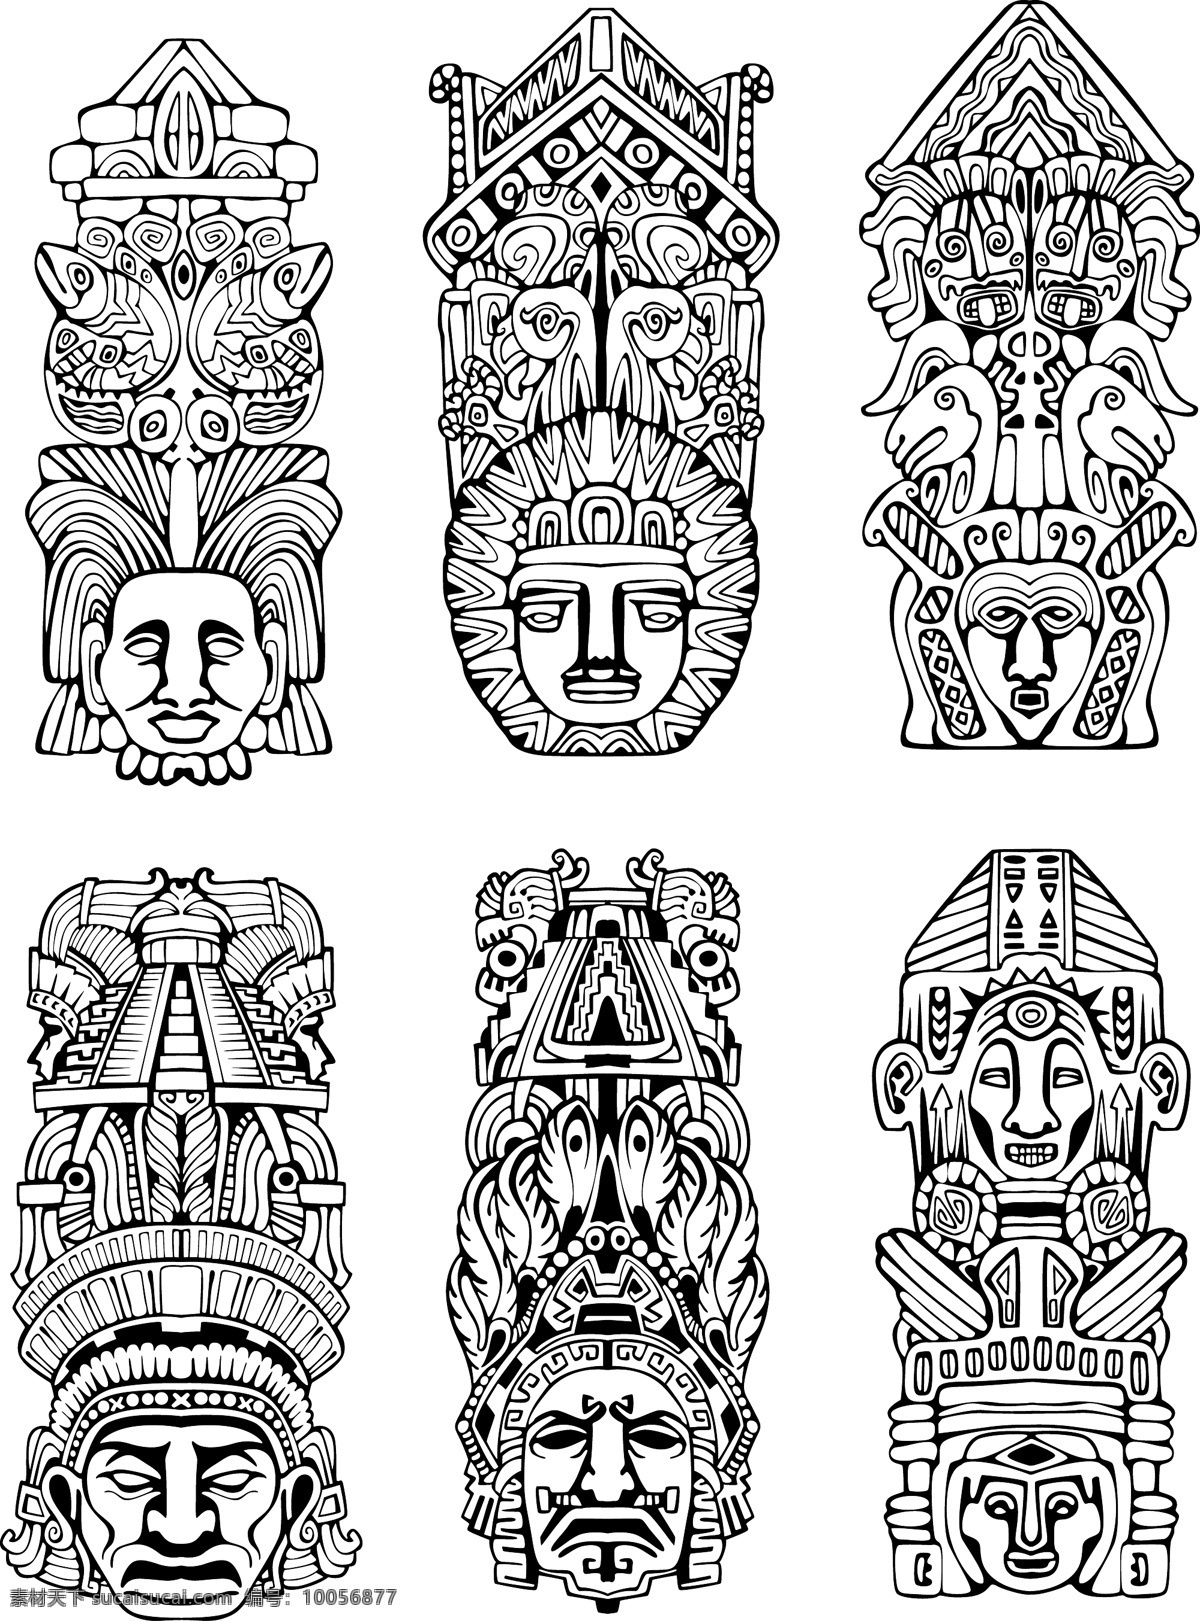 玛雅符号 玛雅 古代 古老 图腾 考古图案 符号 图形 人物 动物 线条 花纹 抽象 矢量素材 其他矢量 矢量 背景 底纹 底纹背景 底纹边框